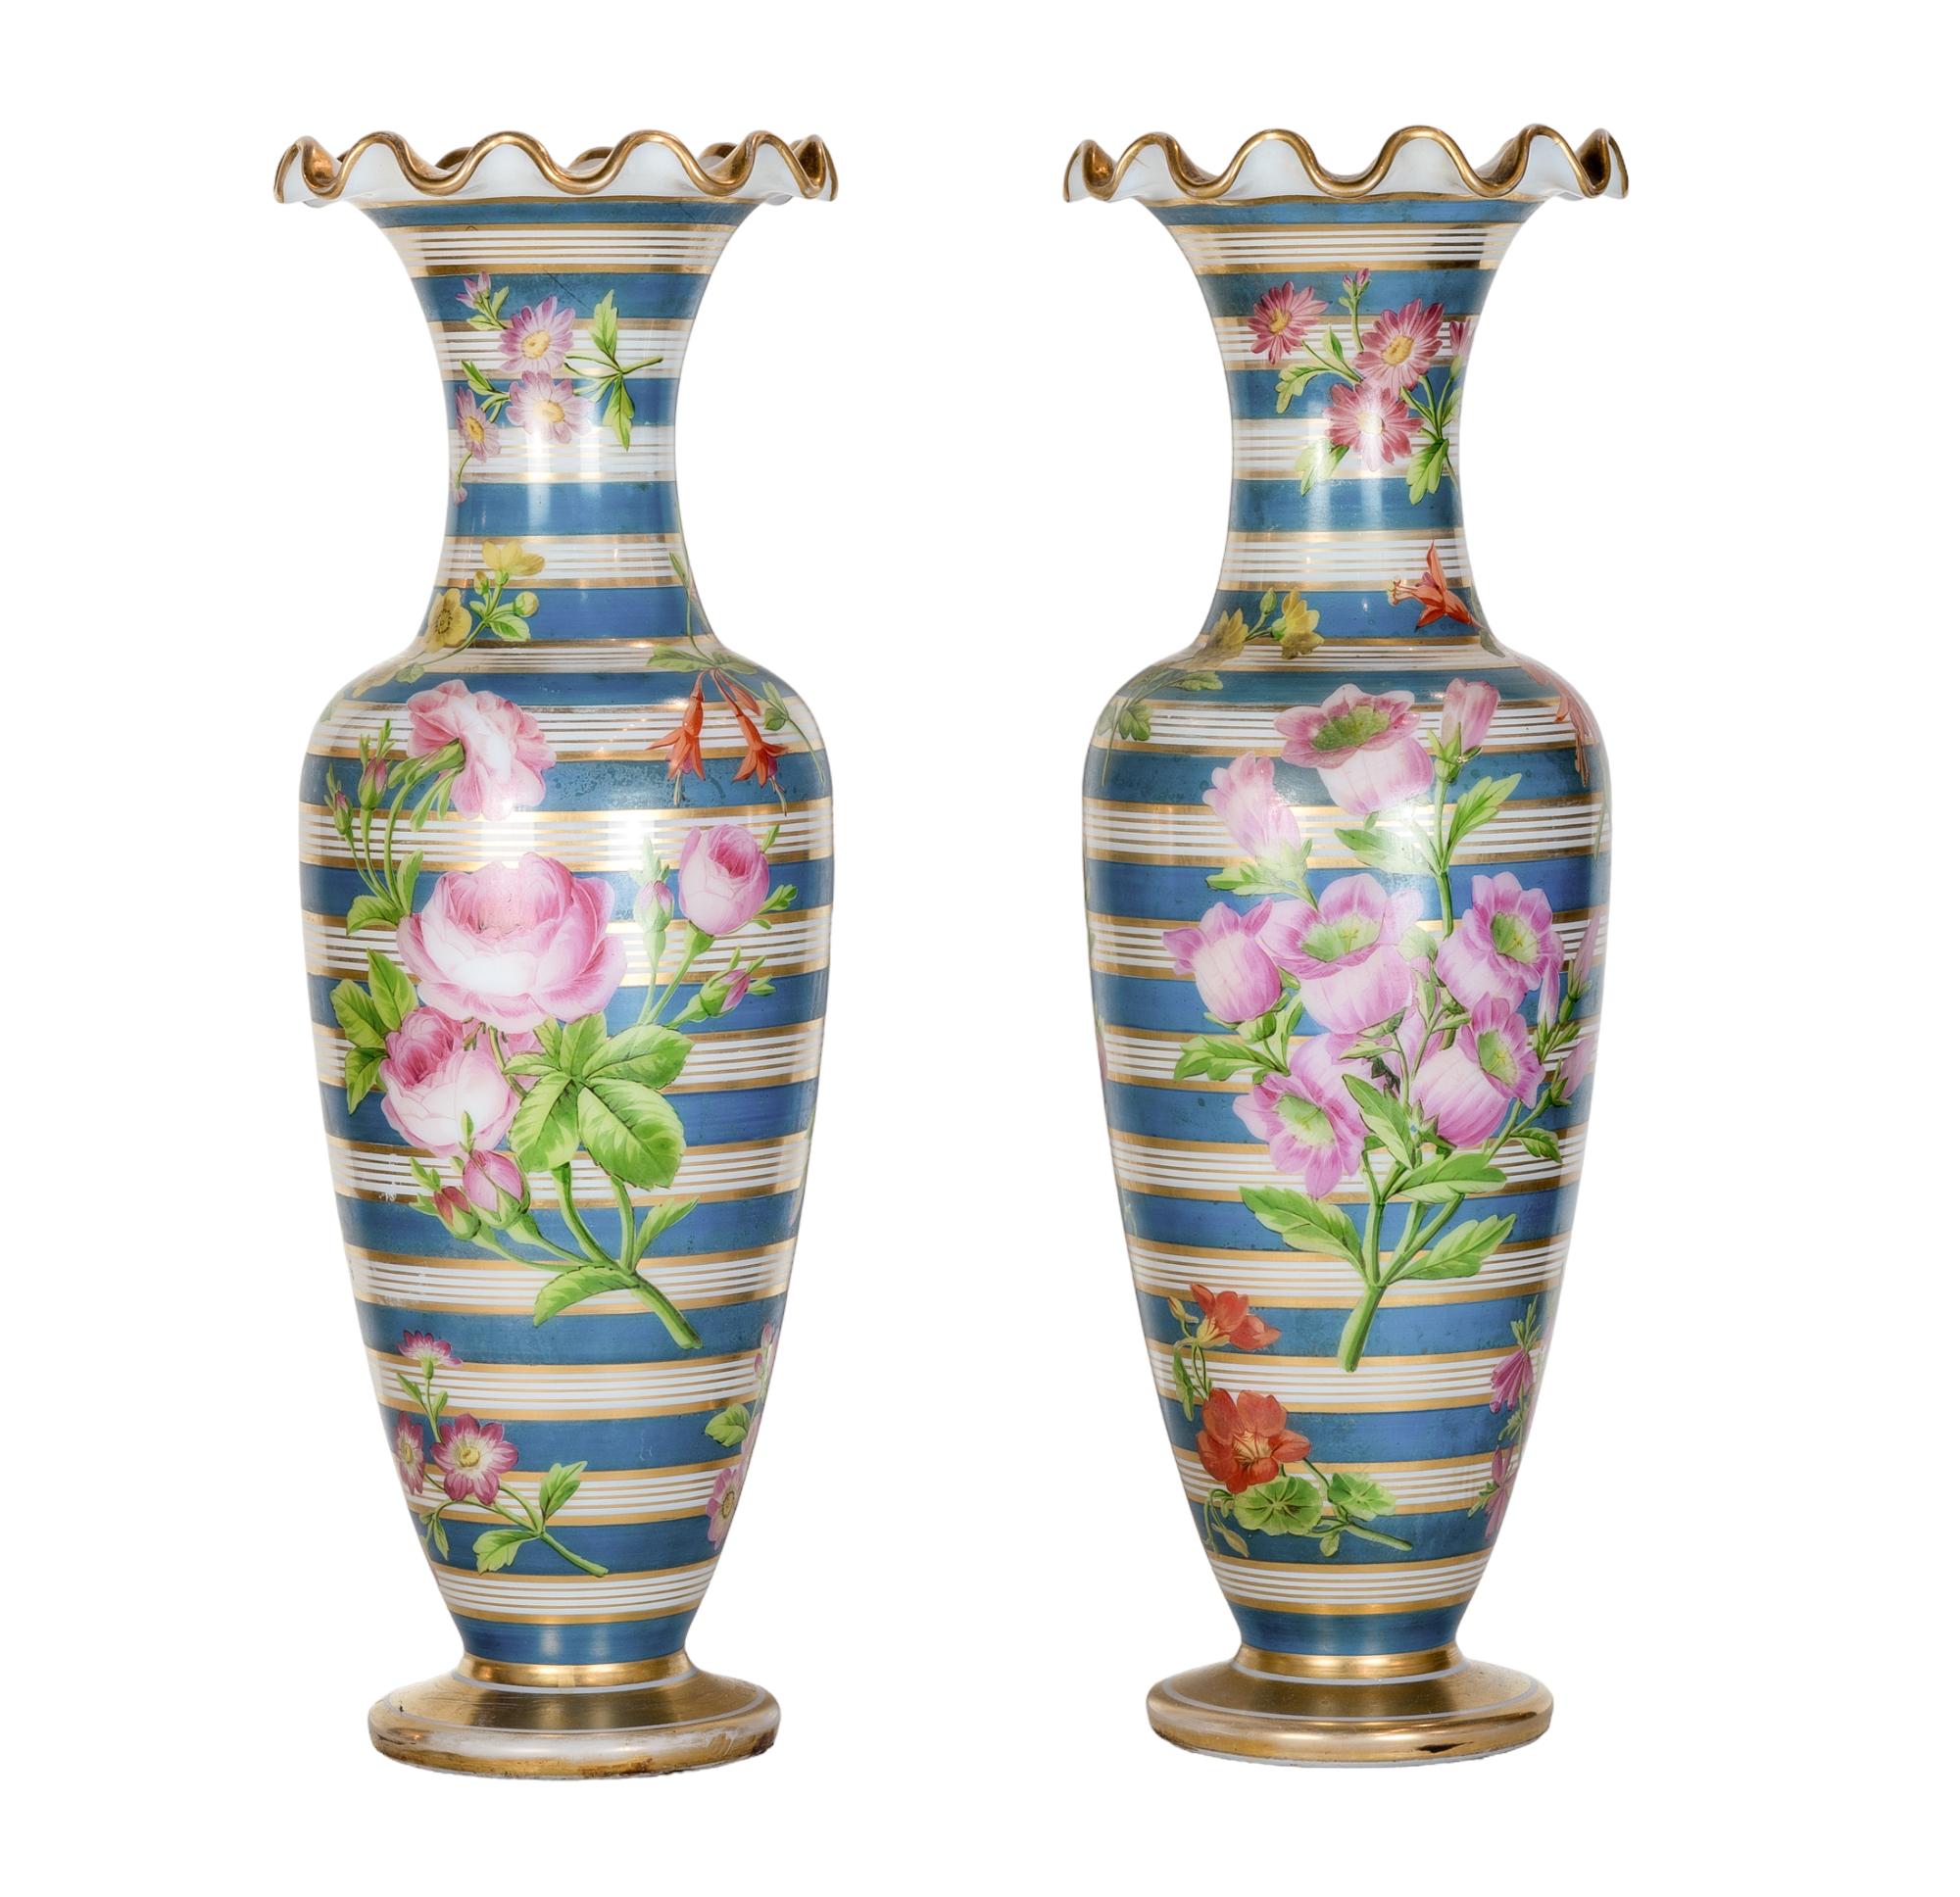 Une opulente paire de vases en verre opalin de Baccarat peints à la main. Enveloppés de rayures céruléennes et dorées, le ventre et le col des vases sont ornés de douces fleurs peintes à la main et d'une frise dorée.  Chaque fleur éclate avec une